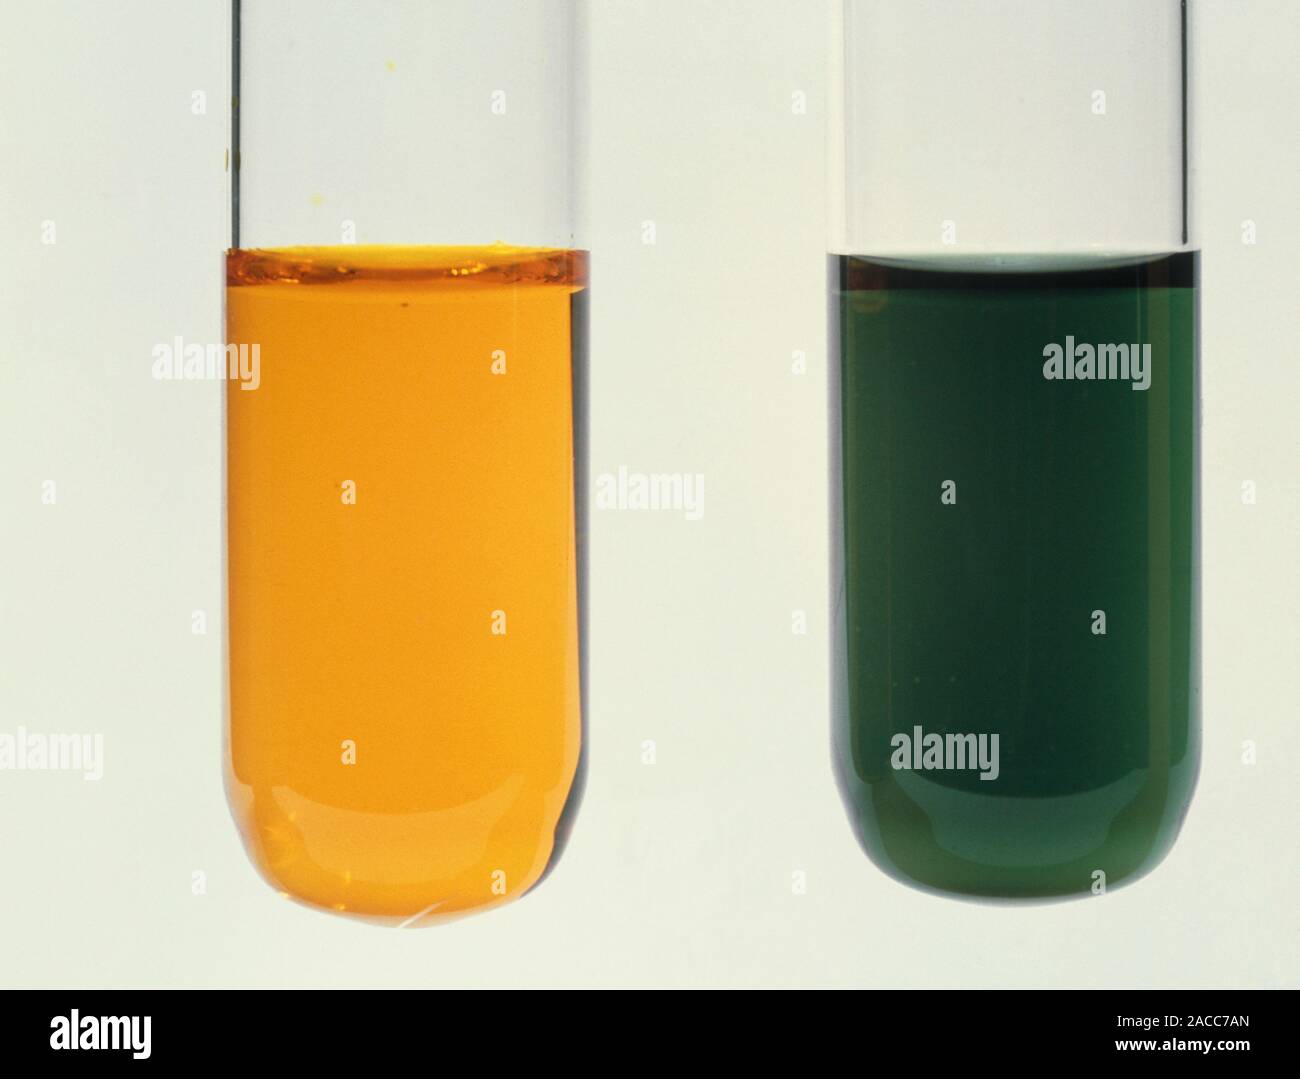 https://c8.alamy.com/compde/2acc7an/alkoholtest-demonstration-der-farbe-andern-dass-die-oxidation-von-alkohol-begleitet-durch-kaliumdichromat-k2cr2o7-orange-die-2acc7an.jpg